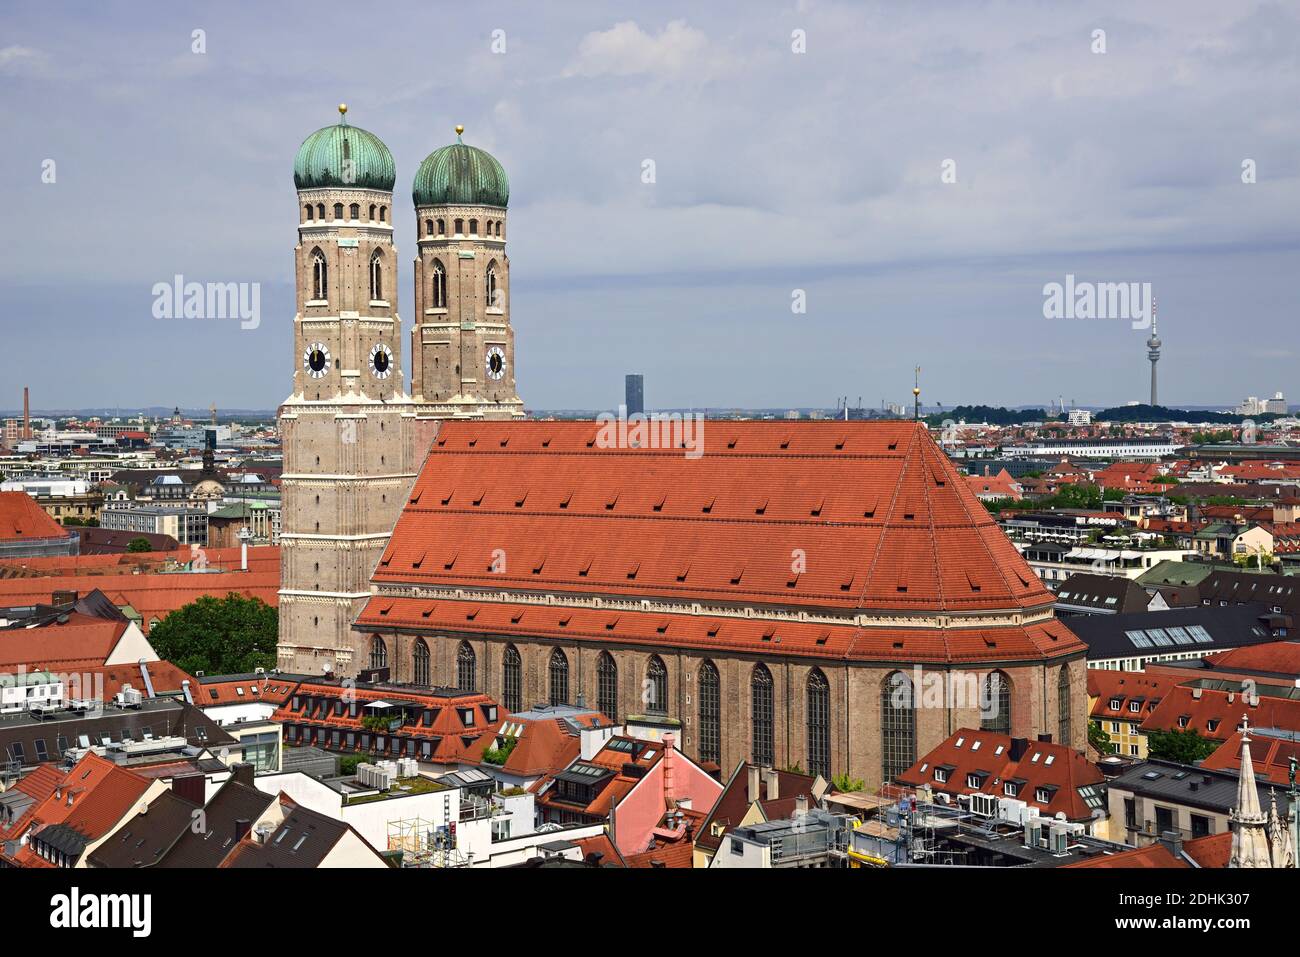 Europa, Deutschland, Bayern, Landeshauptstadt Muenchen, City, Marienplatz, Frauenkirche, Blick von St. Peter, Stock Photo